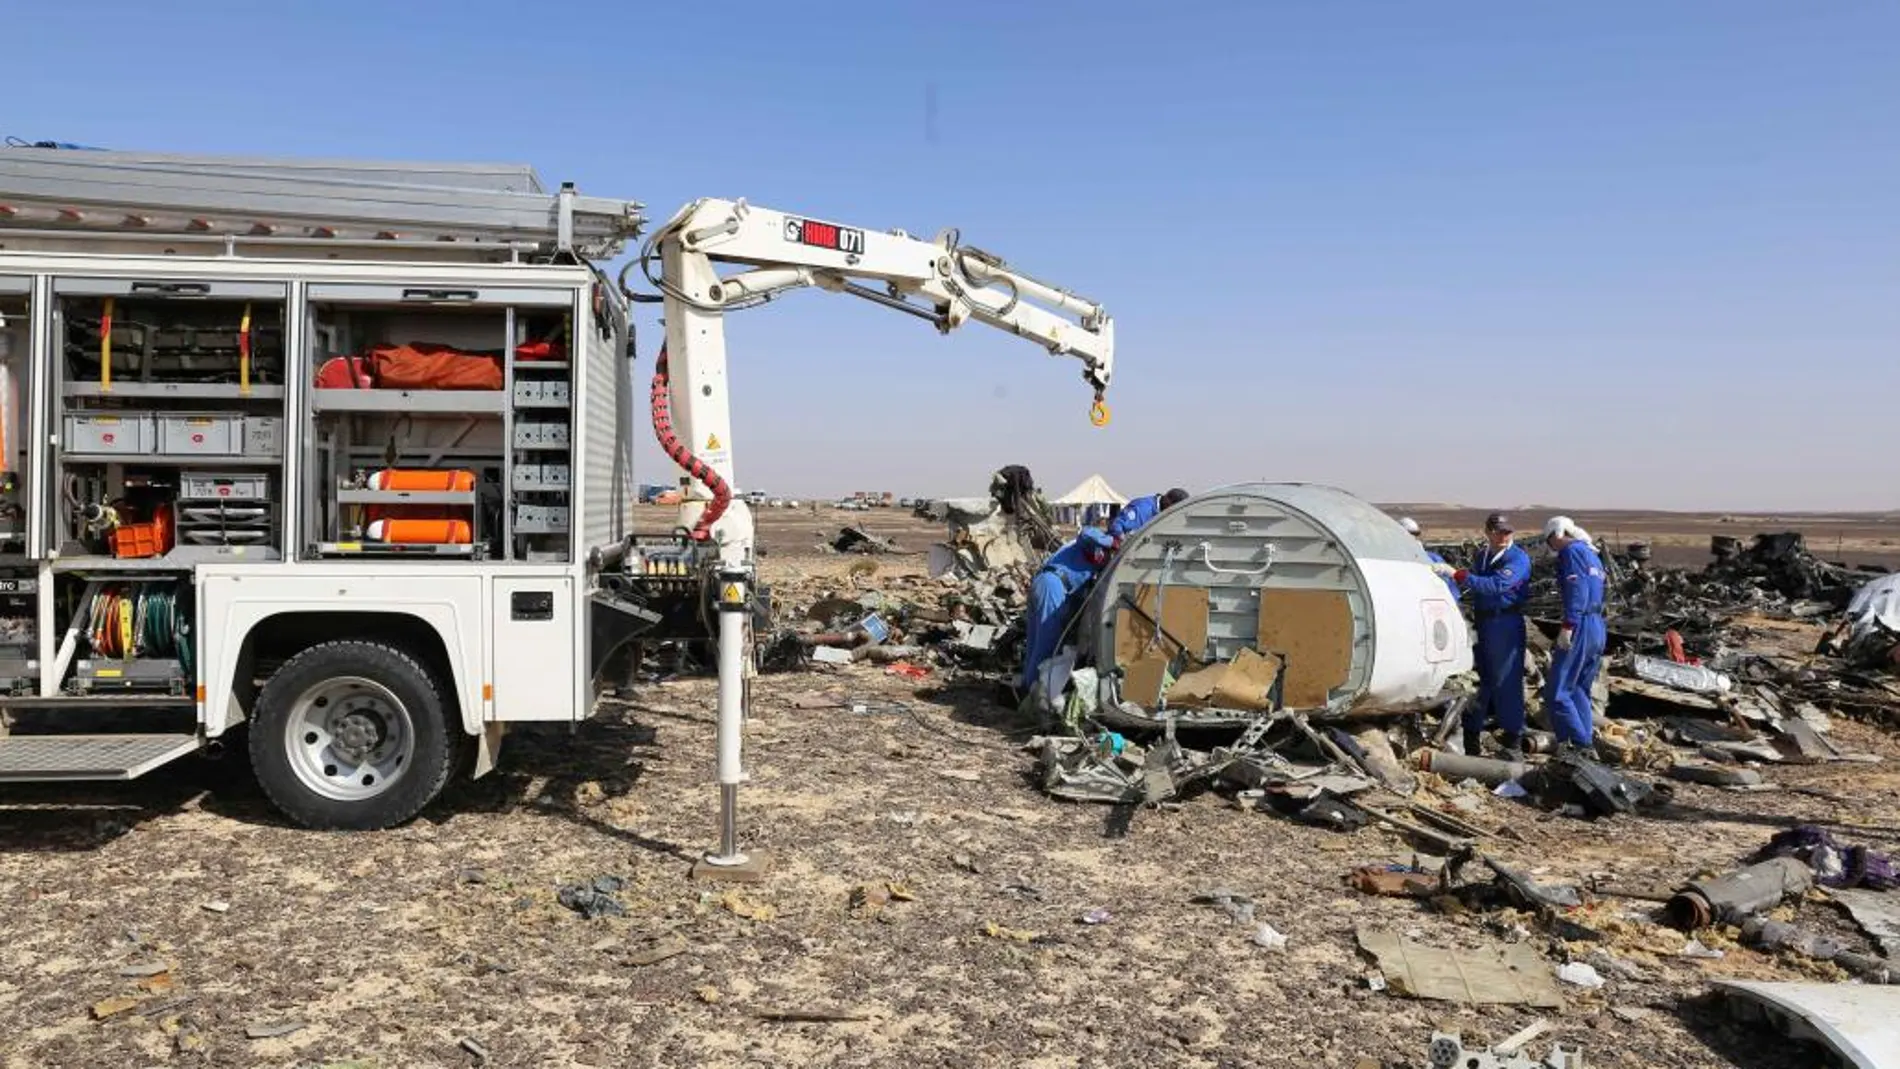 Los expertos trabajan sobre el terreno inspeccionado los restos del avión siniestrado.